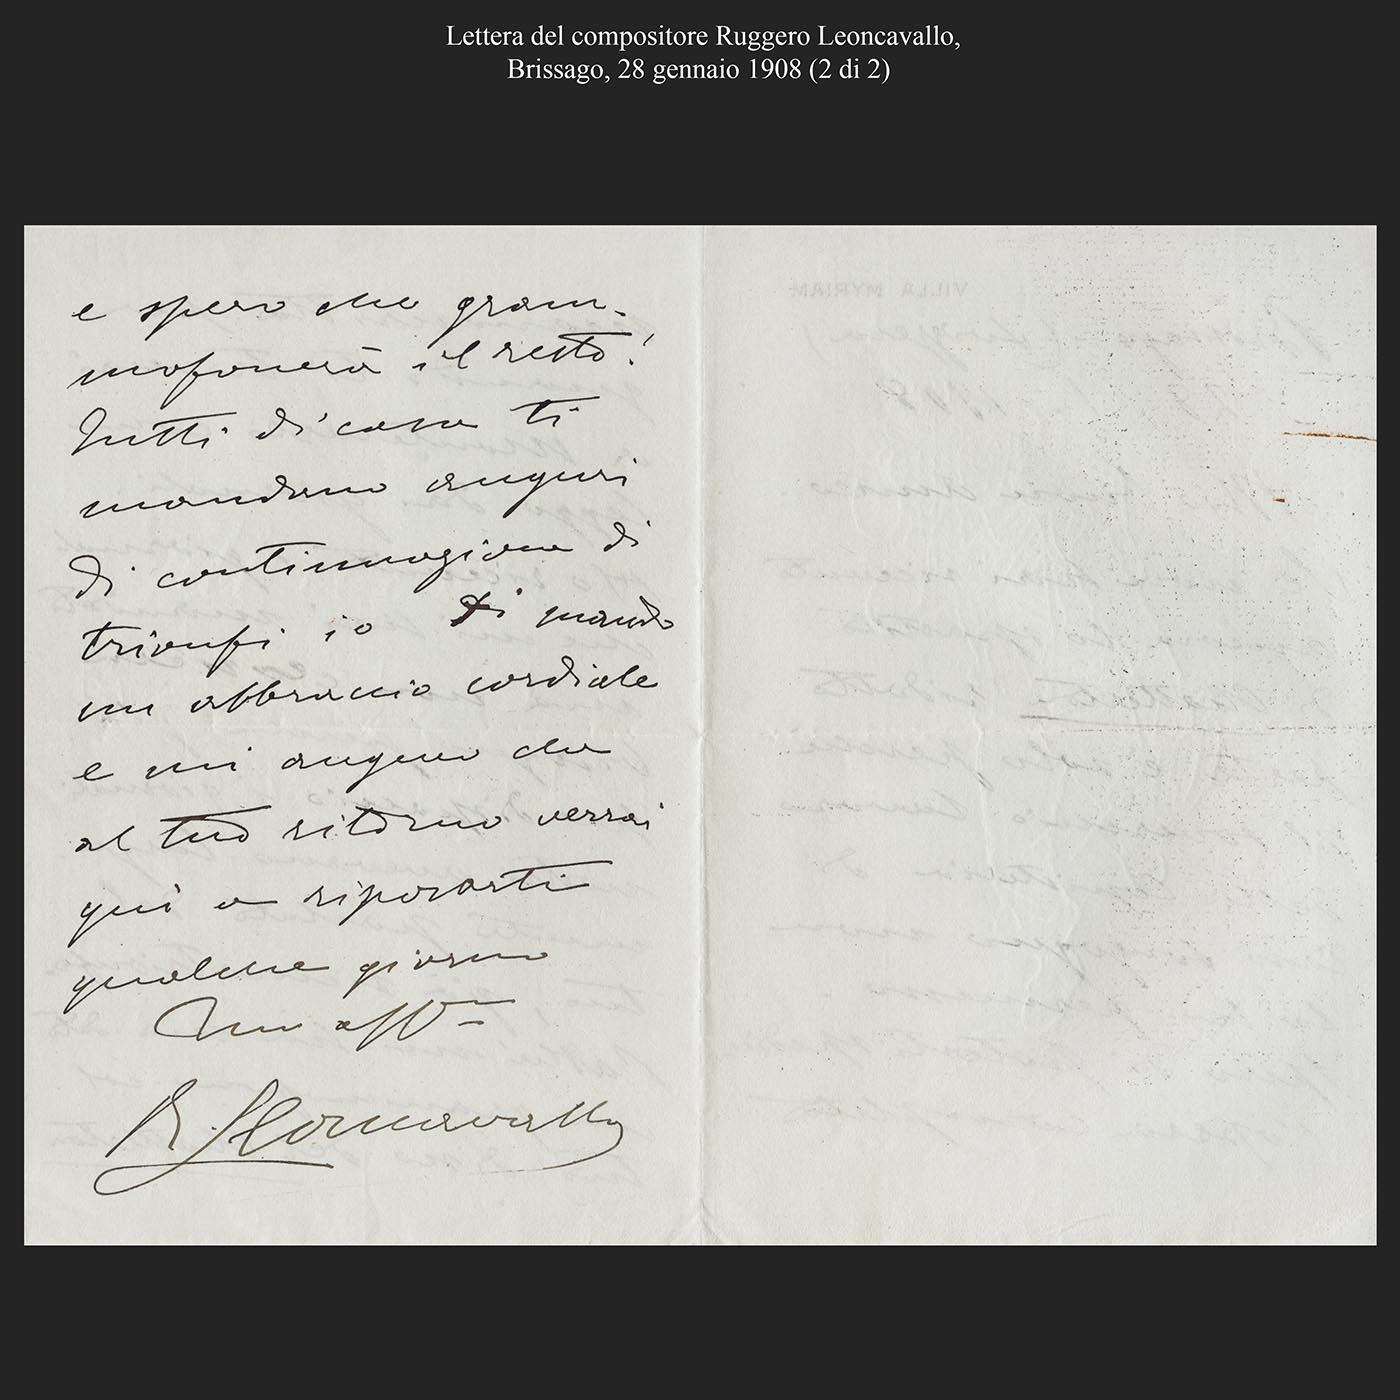 Lettera del compositore Ruggero Leoncavallo, Brissago, 28 gennaio 1908 (2di2)